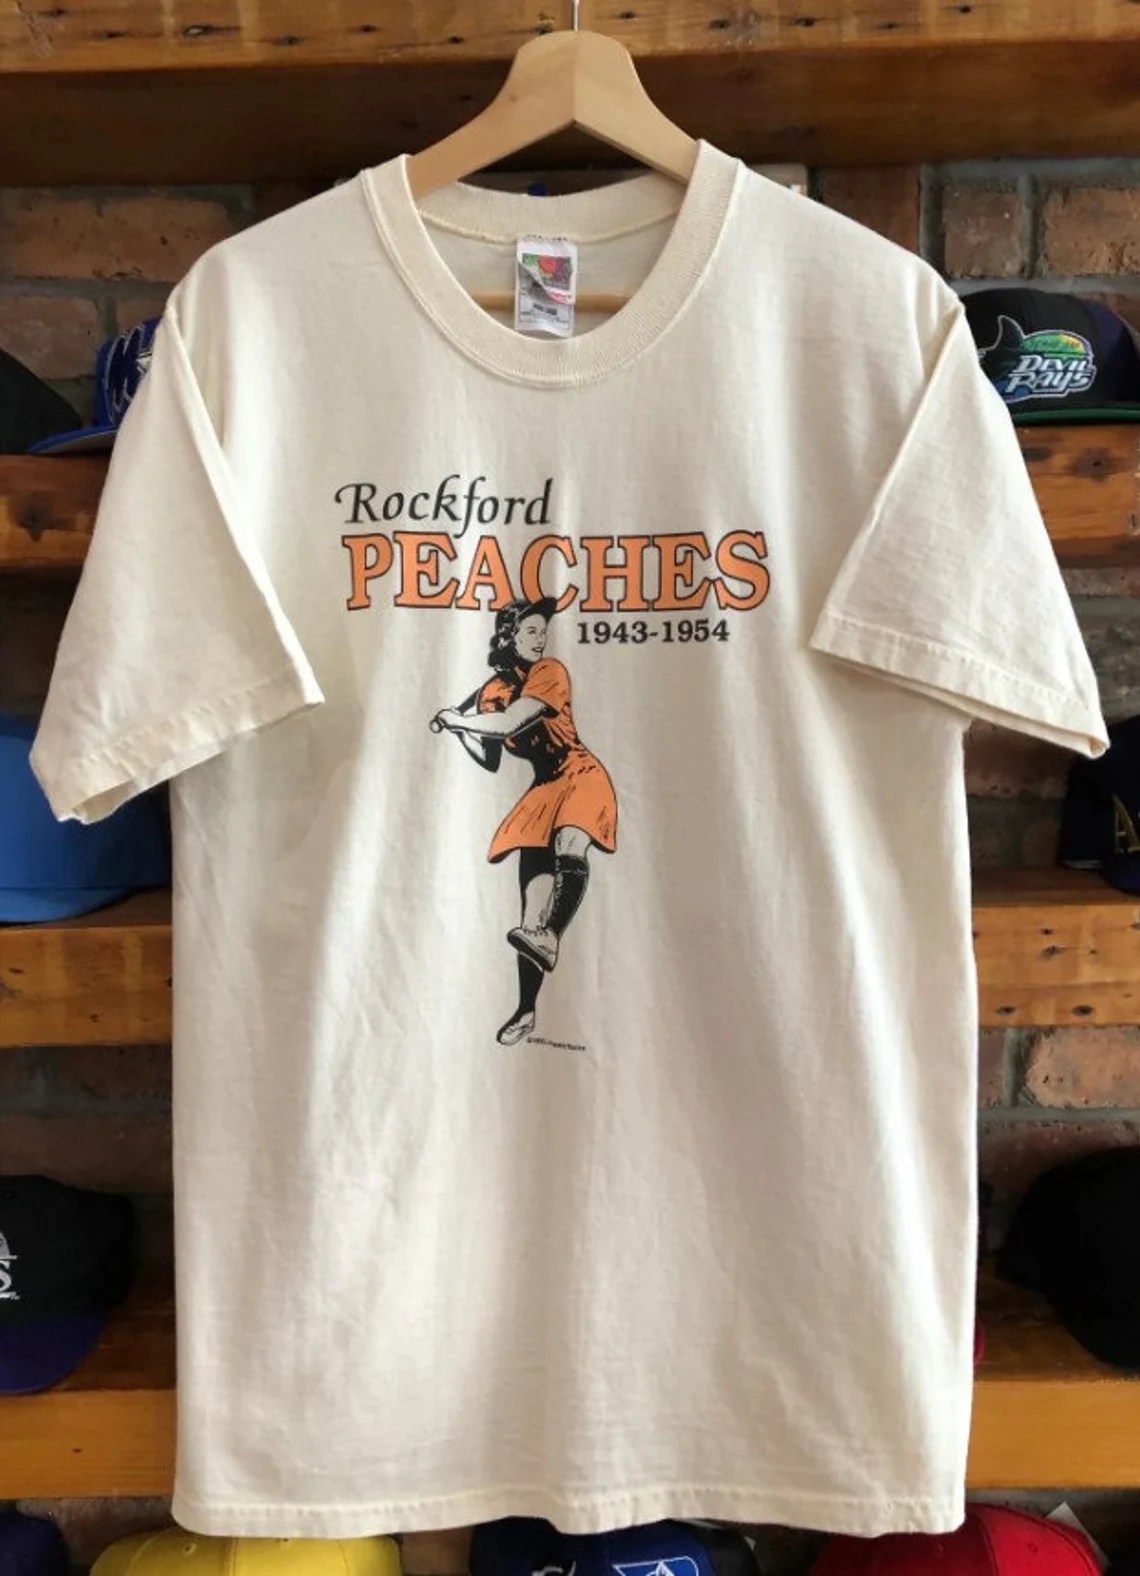 A Rockford Peaches t-shirt